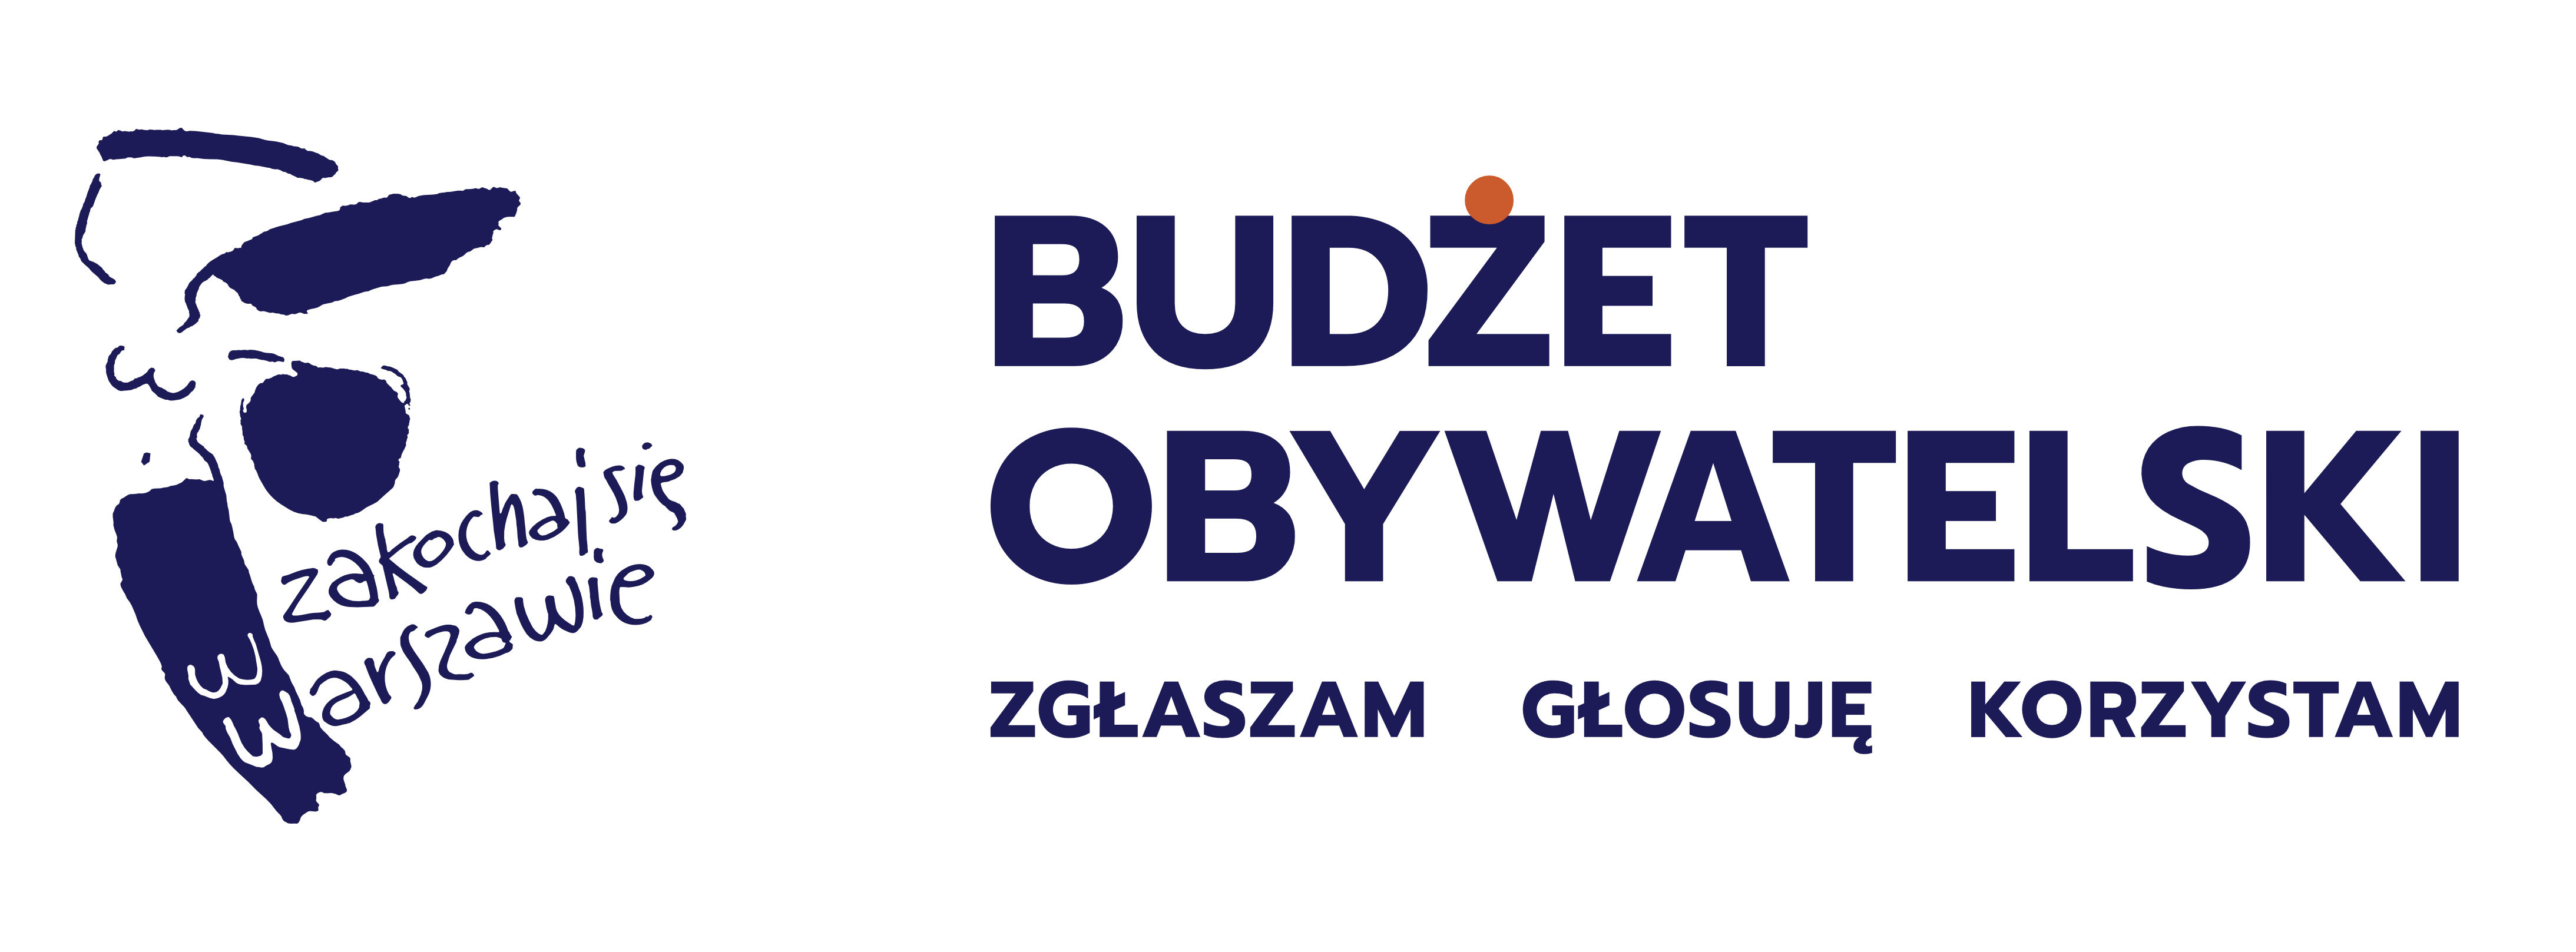 logo budzetu obywatelskiego 2021 2022 napisy: budżet obywatelski zakochaj się w warszawie zgłaszam głosuję korzystam